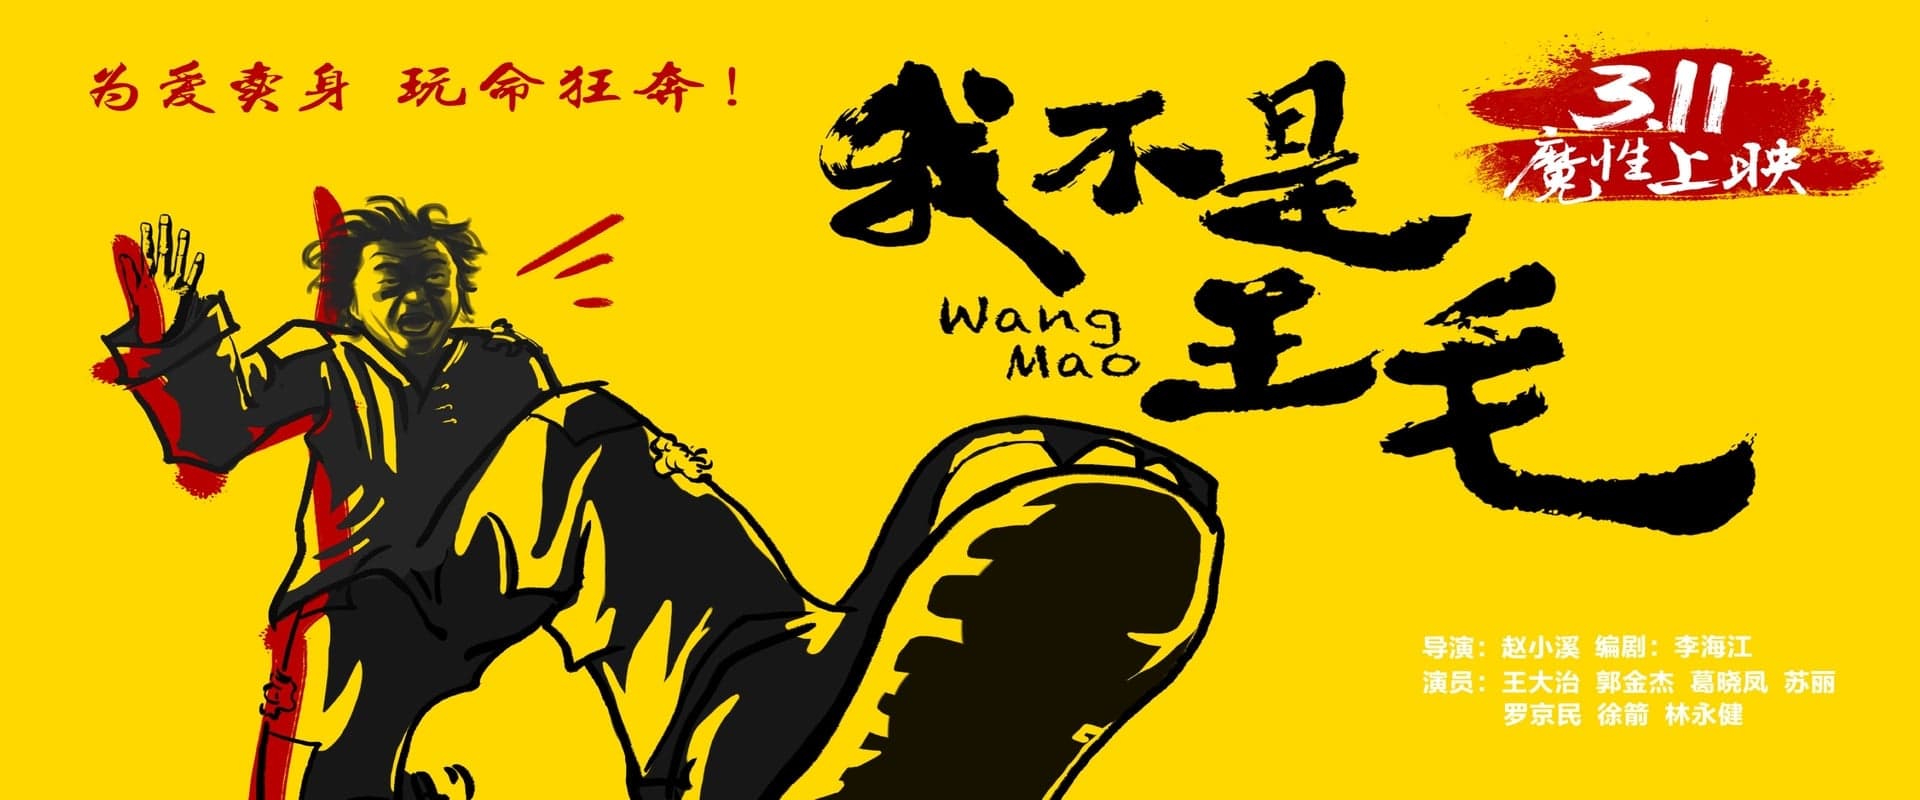 Wang Mao